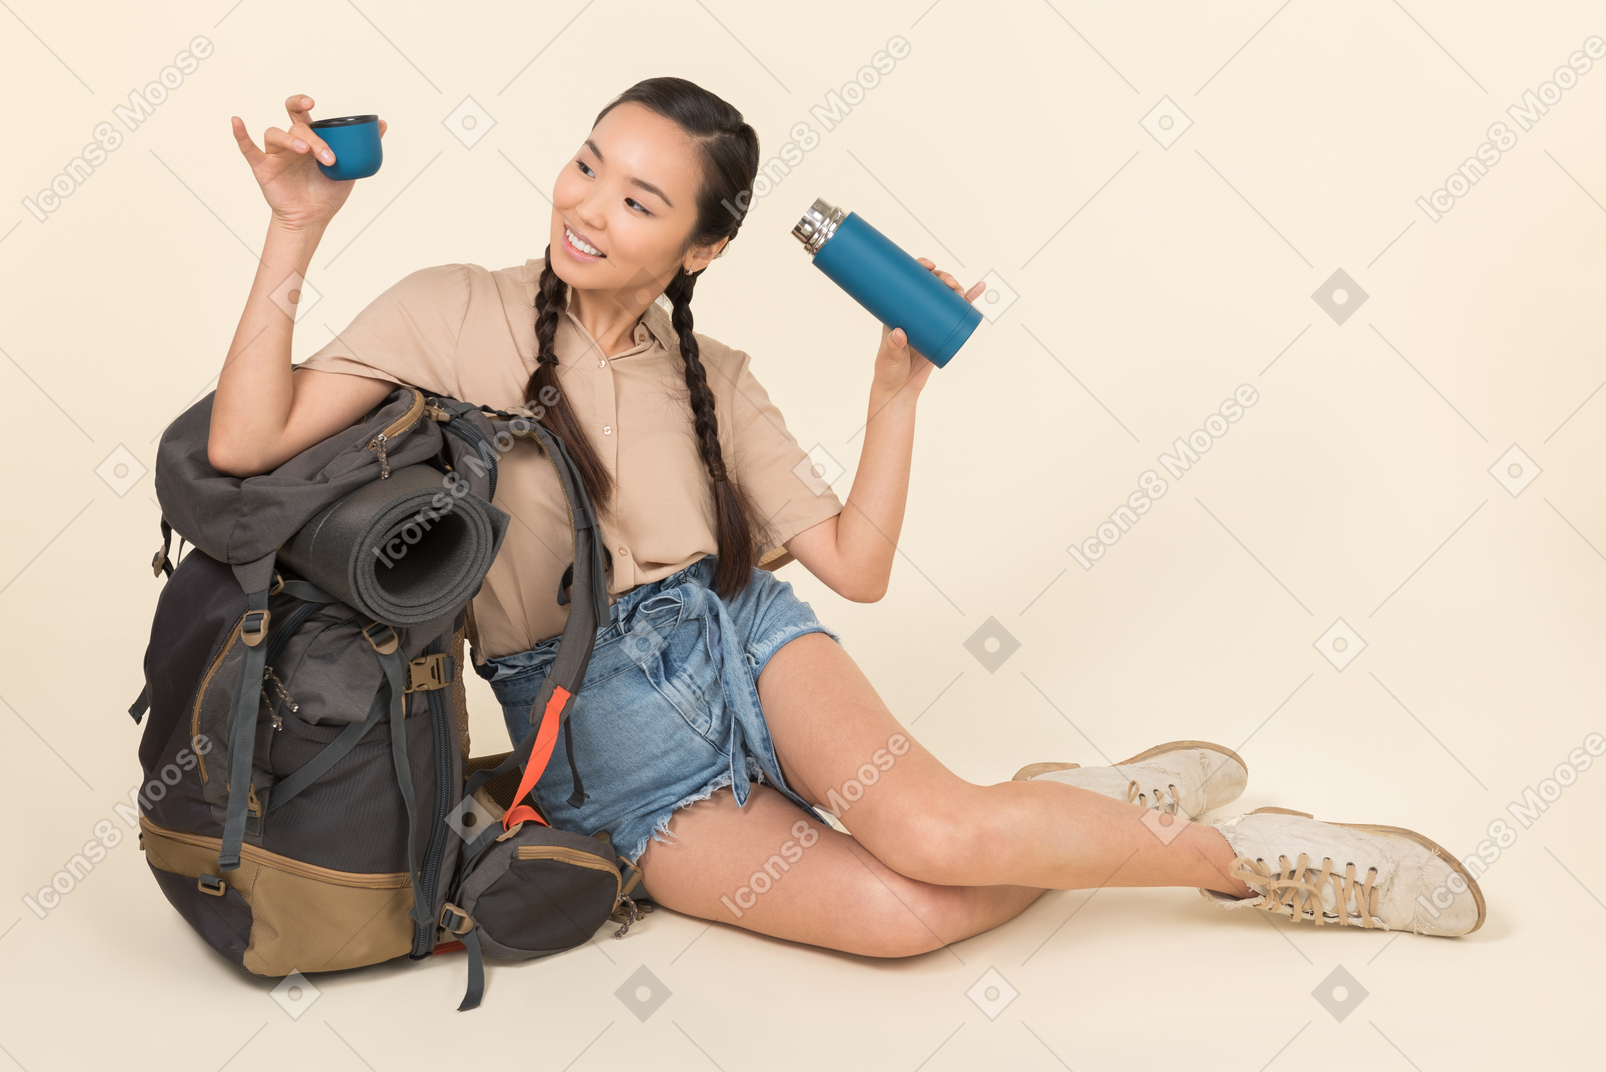 Jeune femme asiatique assise près de sac à dos et tenant thermos